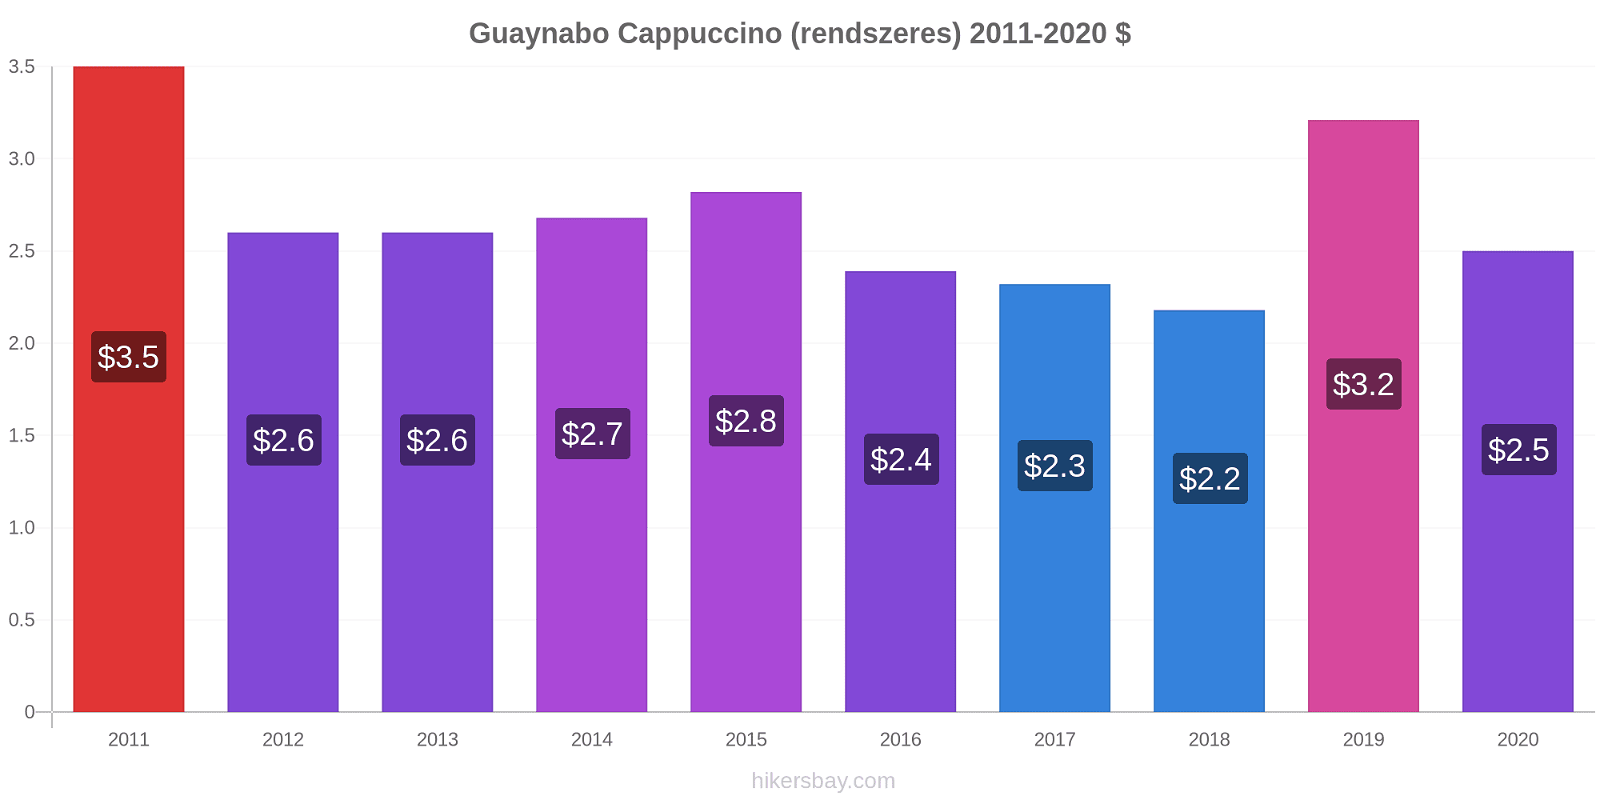 Guaynabo árváltozások Cappuccino (rendszeres) hikersbay.com